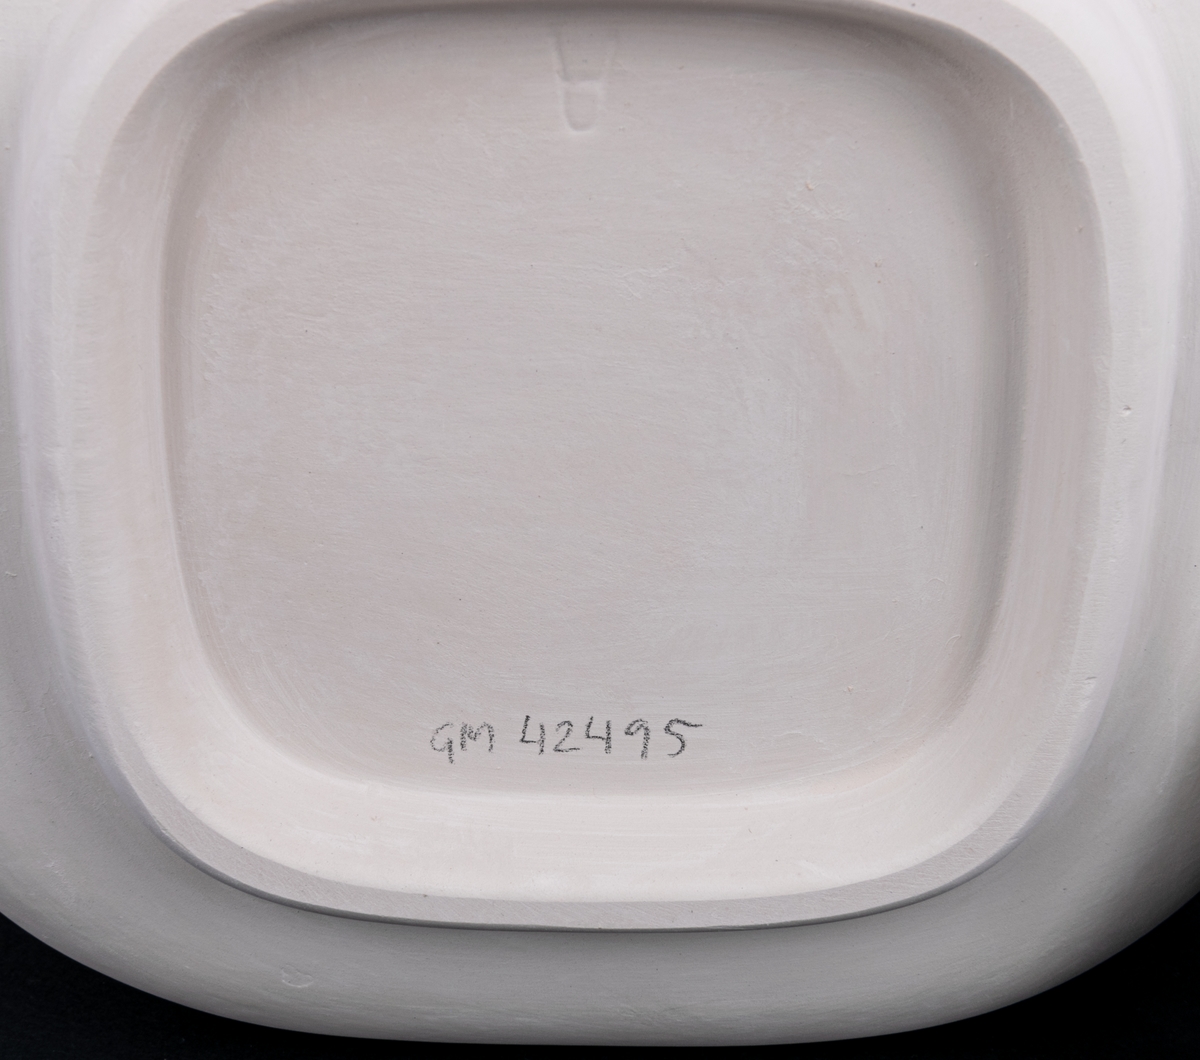 Oglaserad och obränd urna, modell A, av vitt flintgods, ej färdigställd produkt från Gefle porslinsfabrik. Modellen tillverkades 1930-1955.